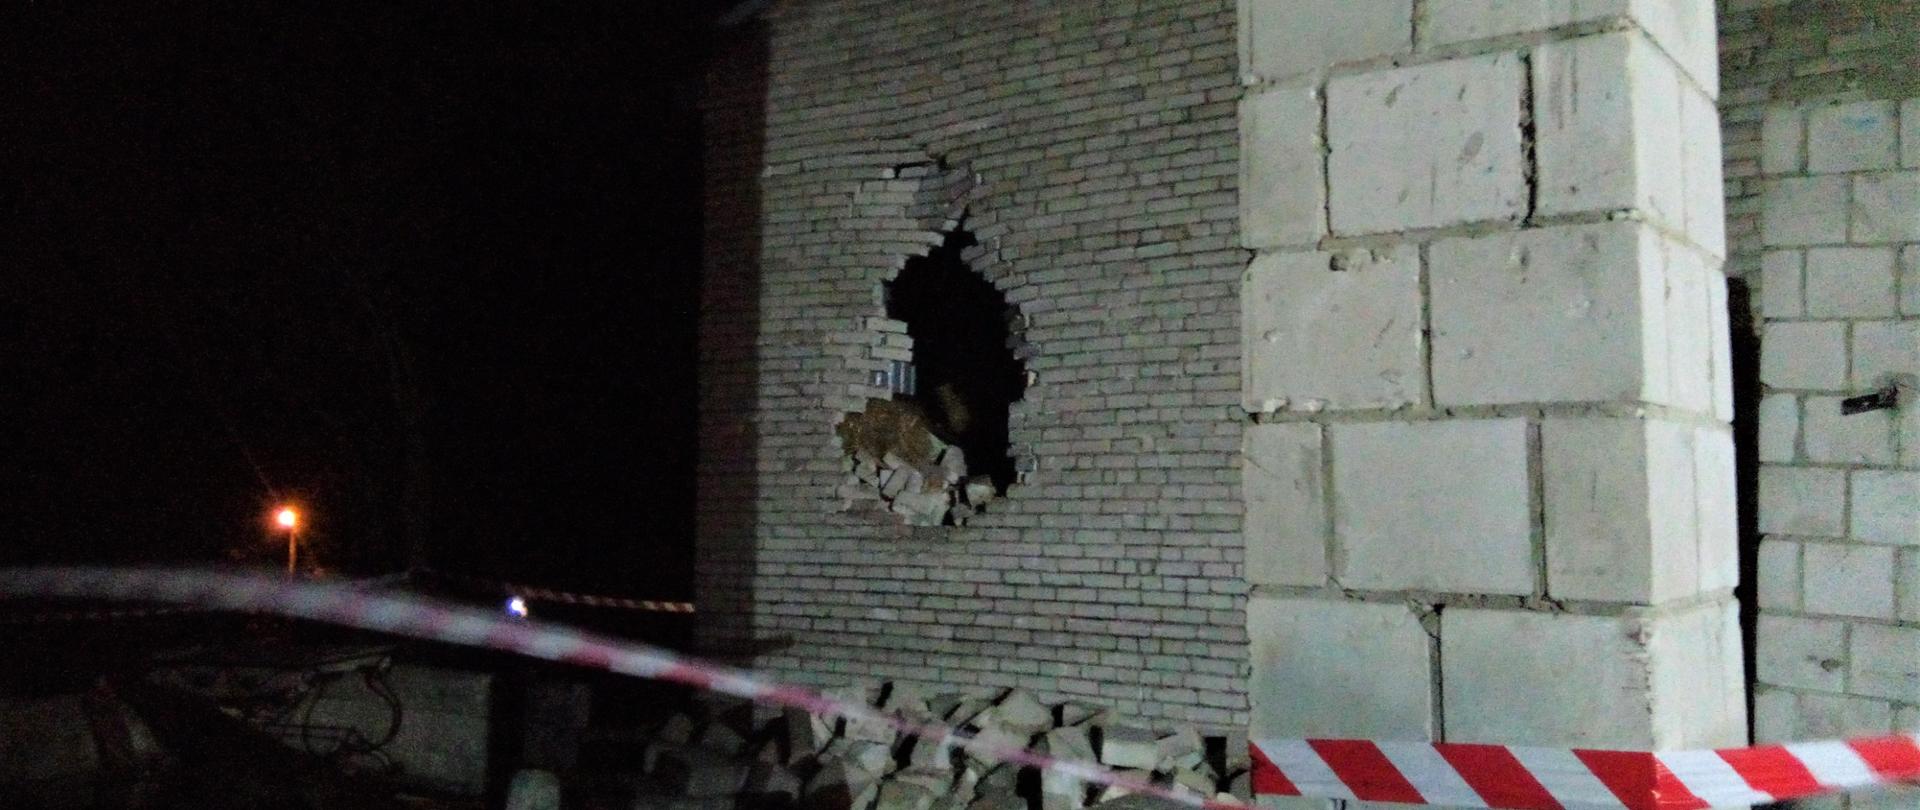 Na zdjęciu widzimy zniszczenia jakie poczyniła przewracająca się pod naporem wiatru ściana starego budynku gospodarczego. Widać wbitą dziurę oraz pochyloną ścianę szczytową w budynku na sąsiedniej posesji